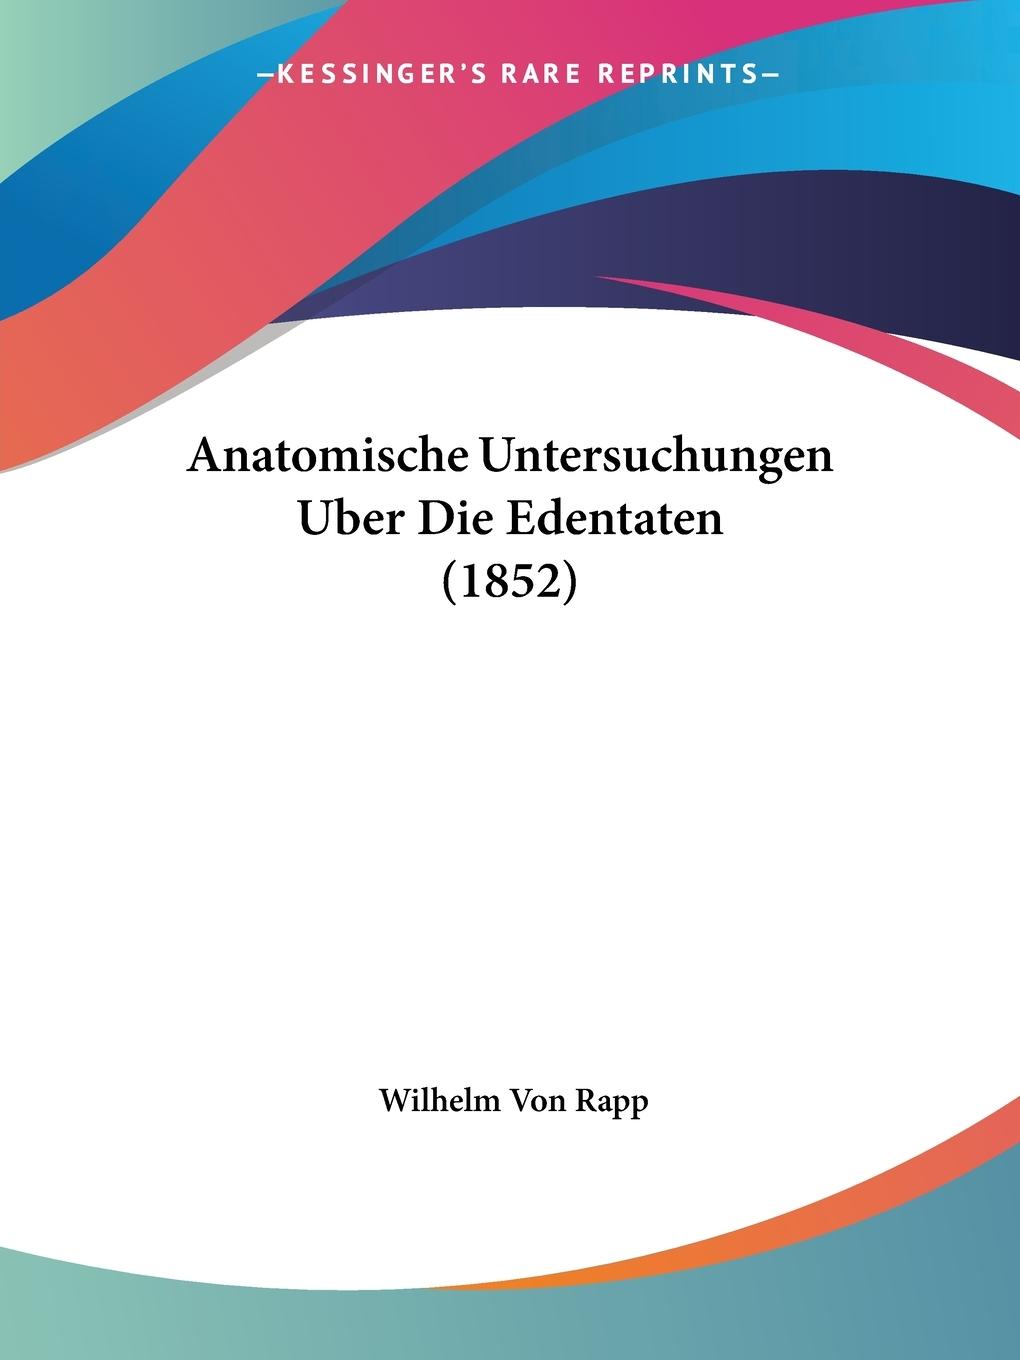 Anatomische Untersuchungen Uber Die Edentaten (1852) - Rapp, Wilhelm von